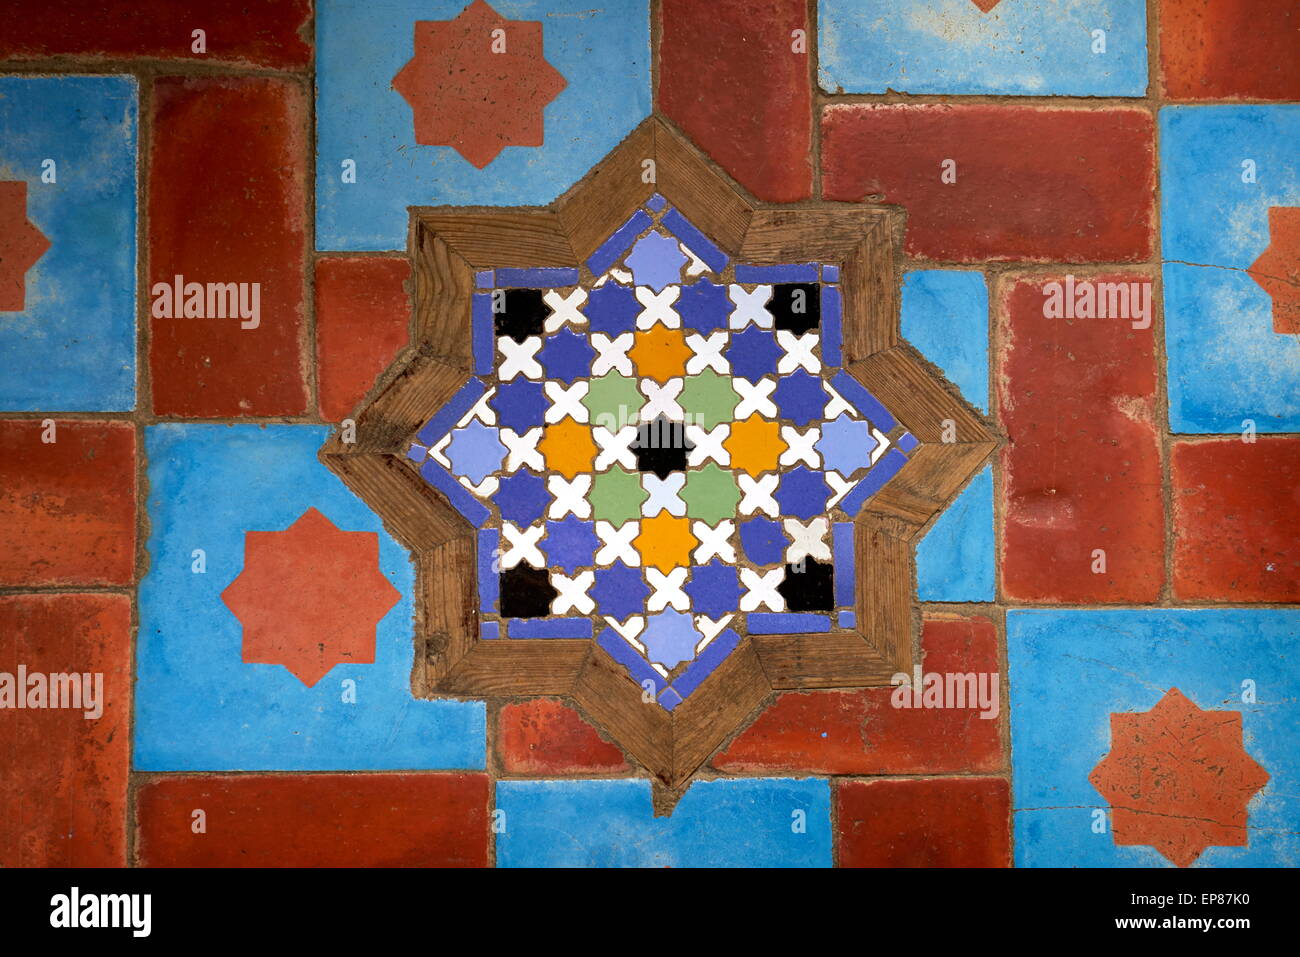 Les carreaux en céramique, brillant et coloré, sont utilisés pour les sols et murs. Maroc Banque D'Images